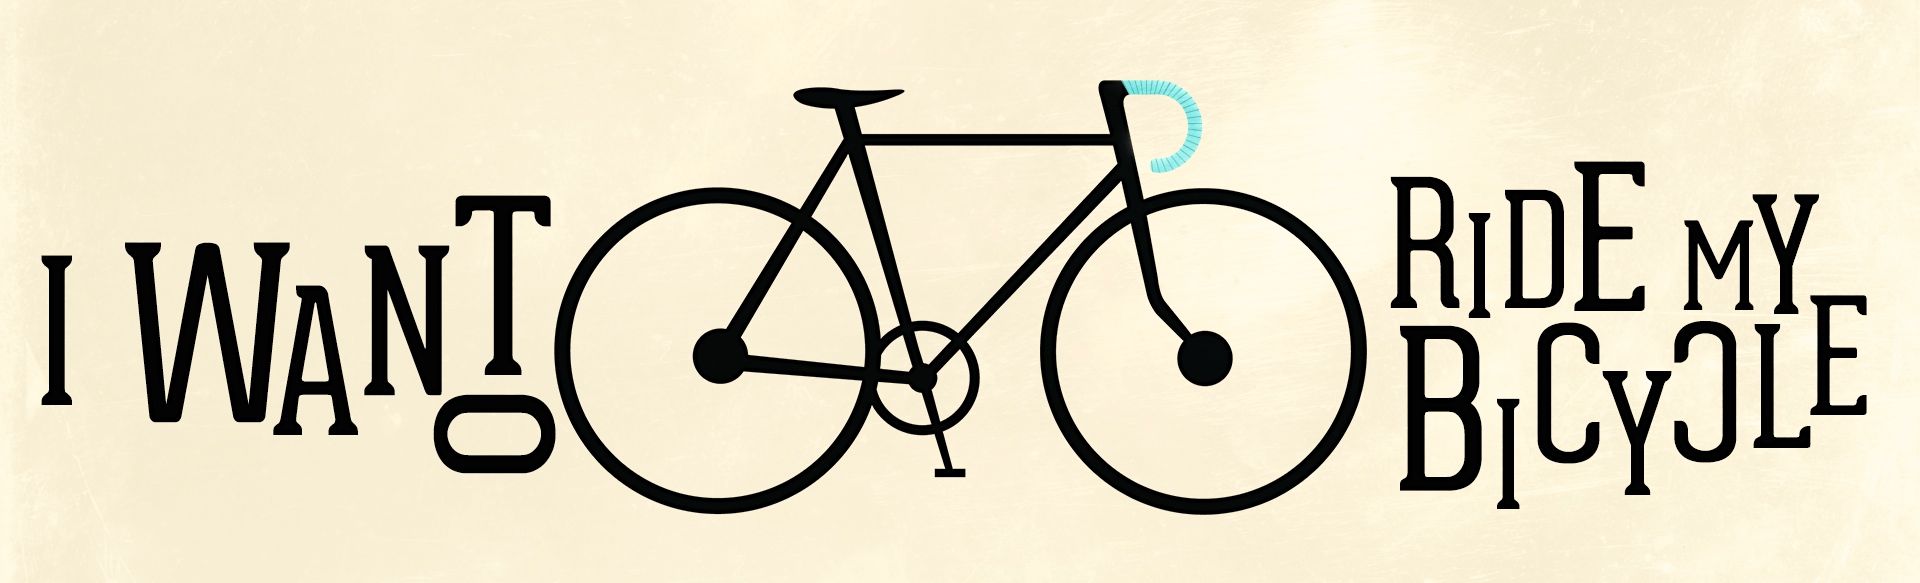 Its my bike. Май байк. Ай вонт байк. I want to Ride my Bicycle. Наклейки ай вонт байк.